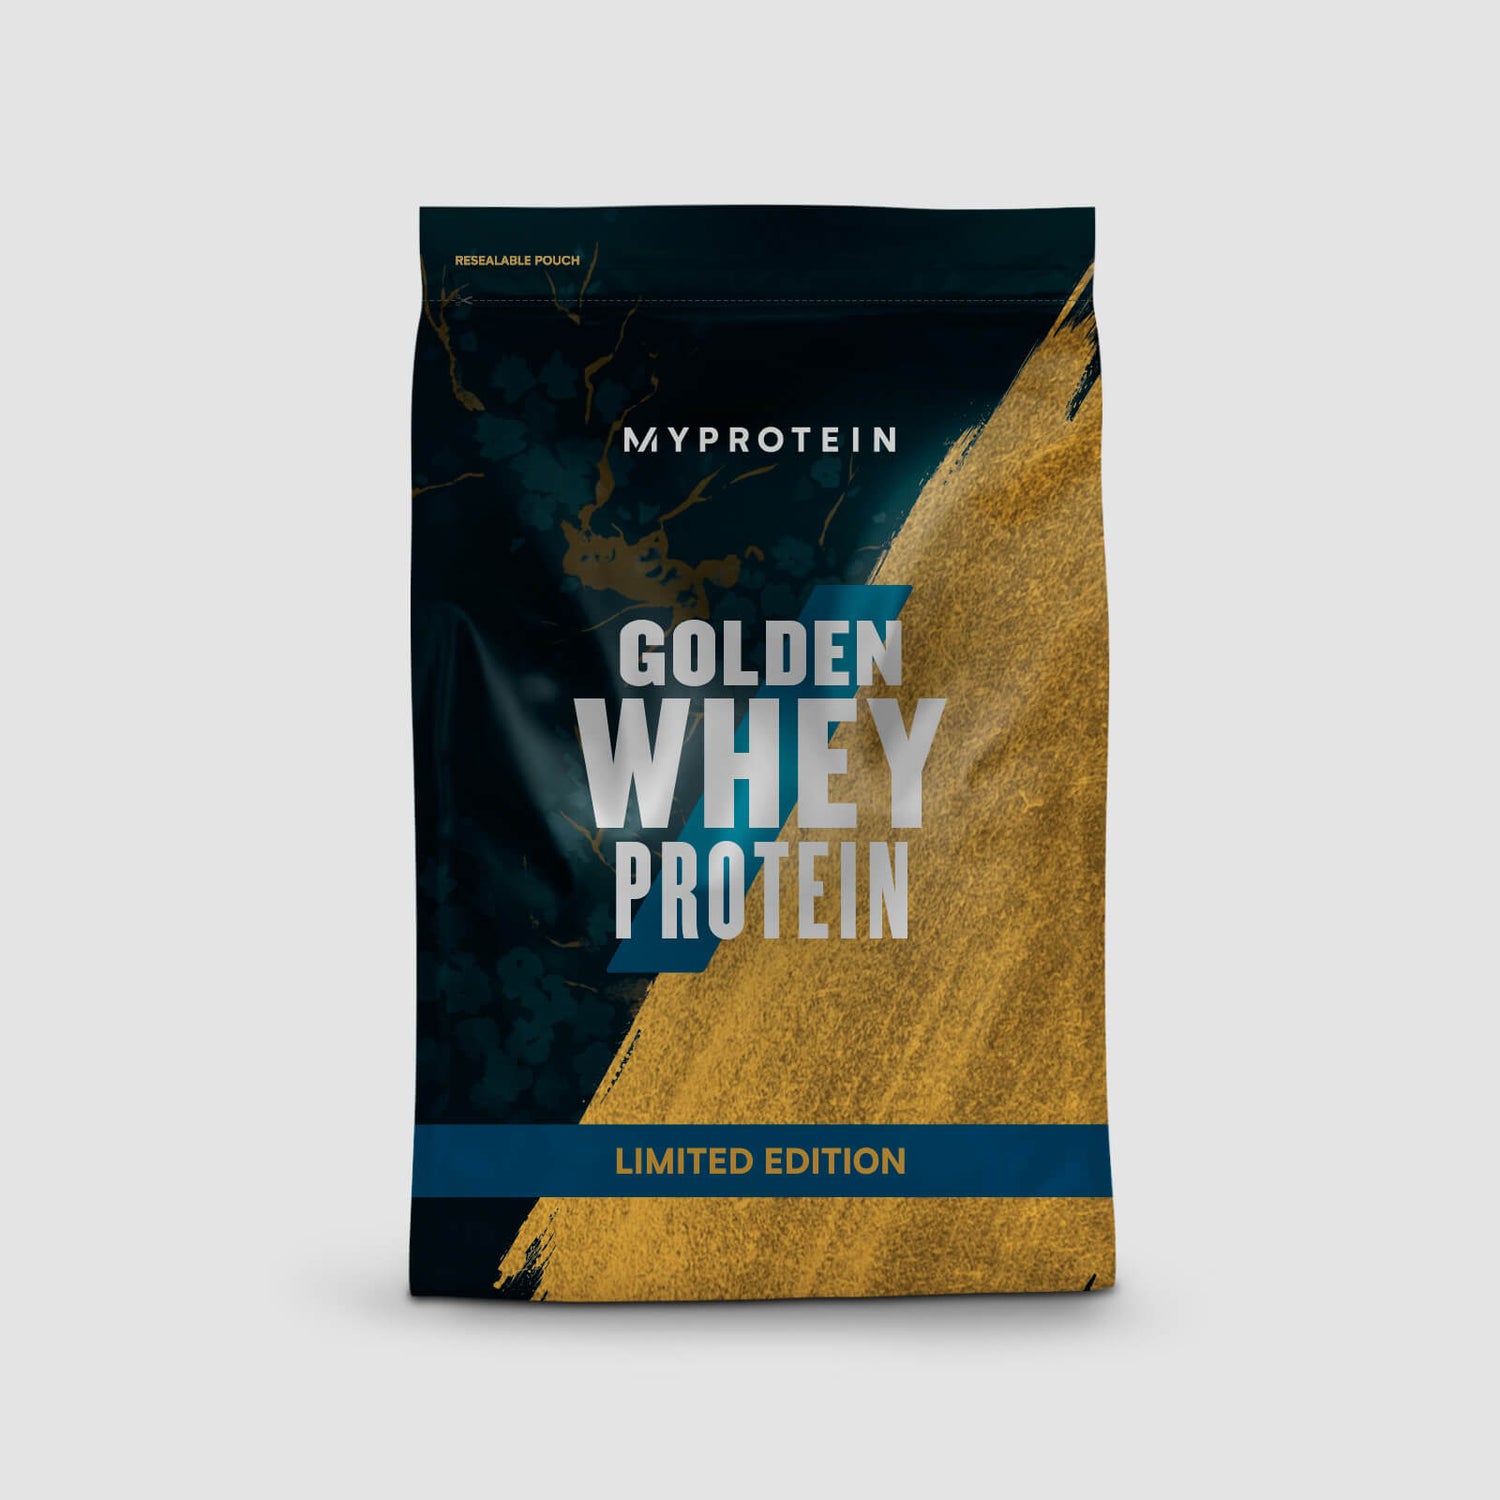 Myprotein Impact Whey Protein, Gold, 1kg